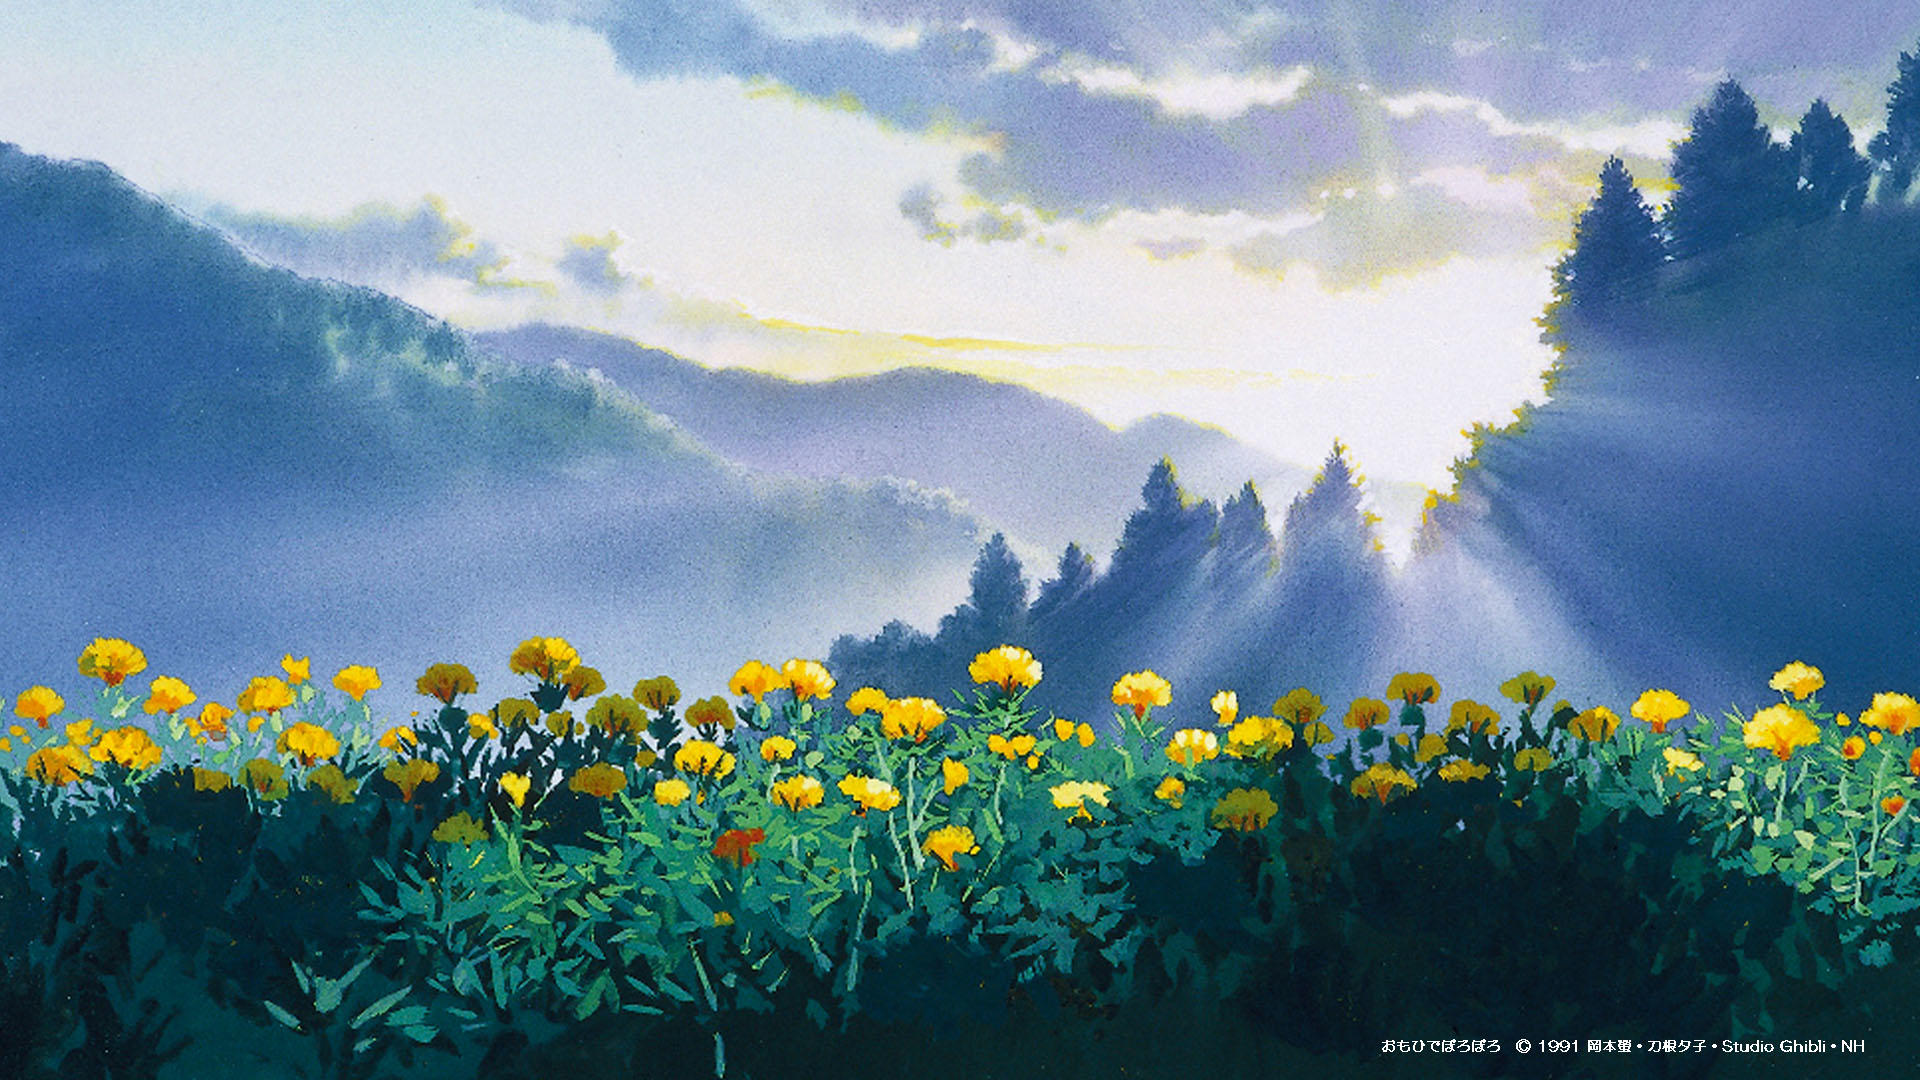 Hãy xem bức ảnh liên quan đến Studio Ghibli để thưởng thức tài năng và sáng tạo của những nhà làm phim tuyệt vời này. Đây là một cơ hội tuyệt vời để khám phá những câu chuyện đầy màu sắc và nghệ thuật tinh tế của Studio Ghibli, đồng thời tìm hiểu thêm về văn hóa phim hoạt hình của Nhật Bản.